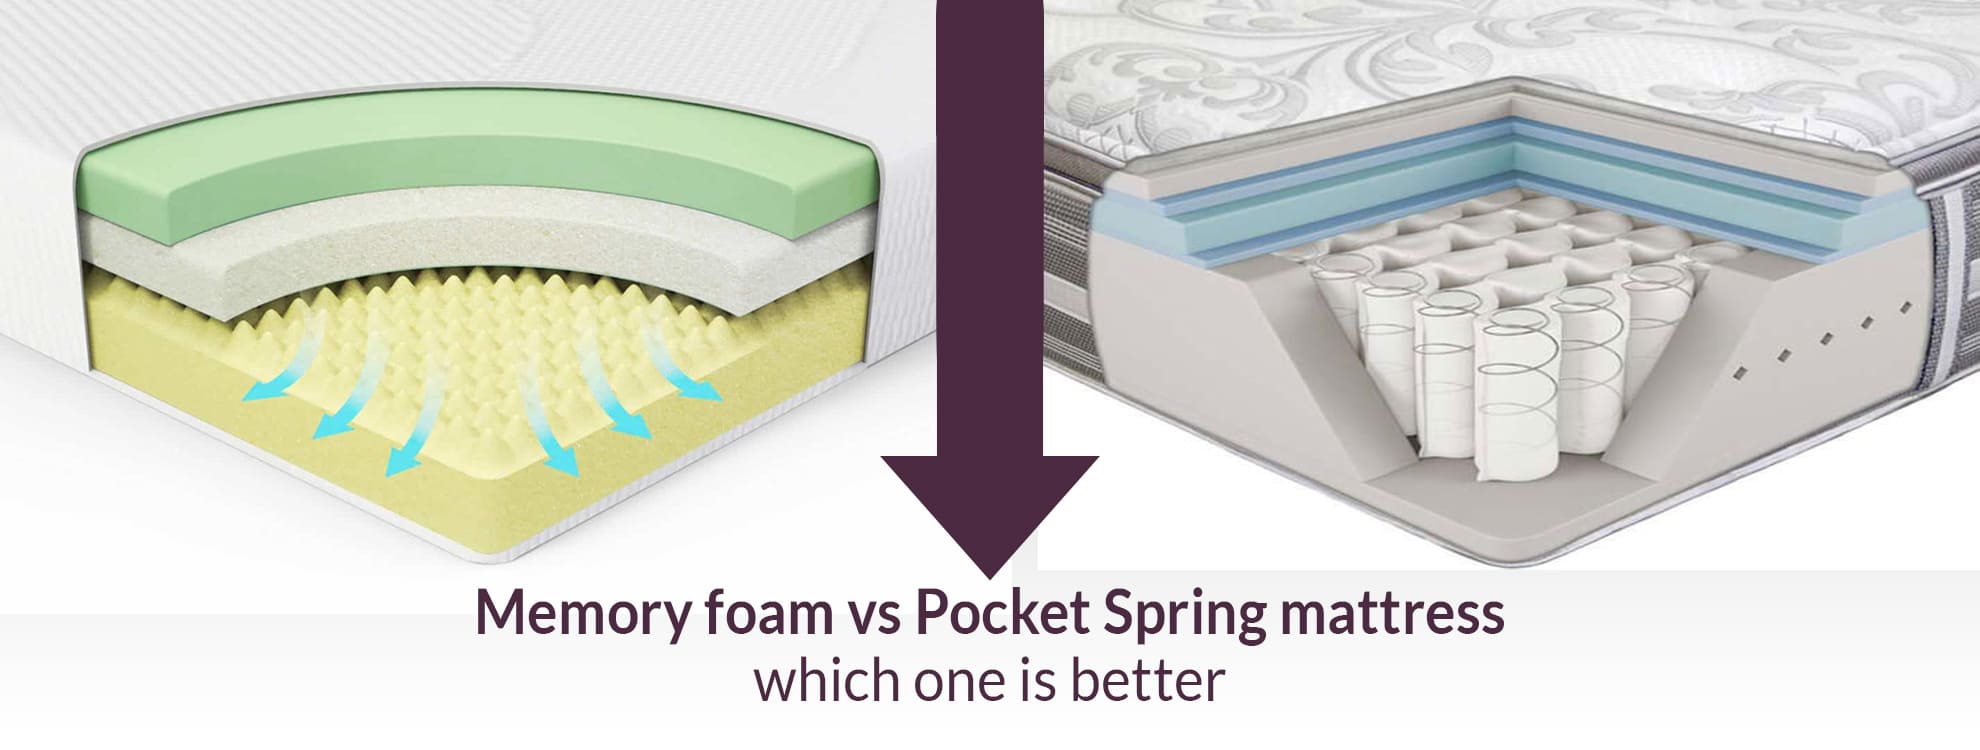 is a pocket spring mattress good